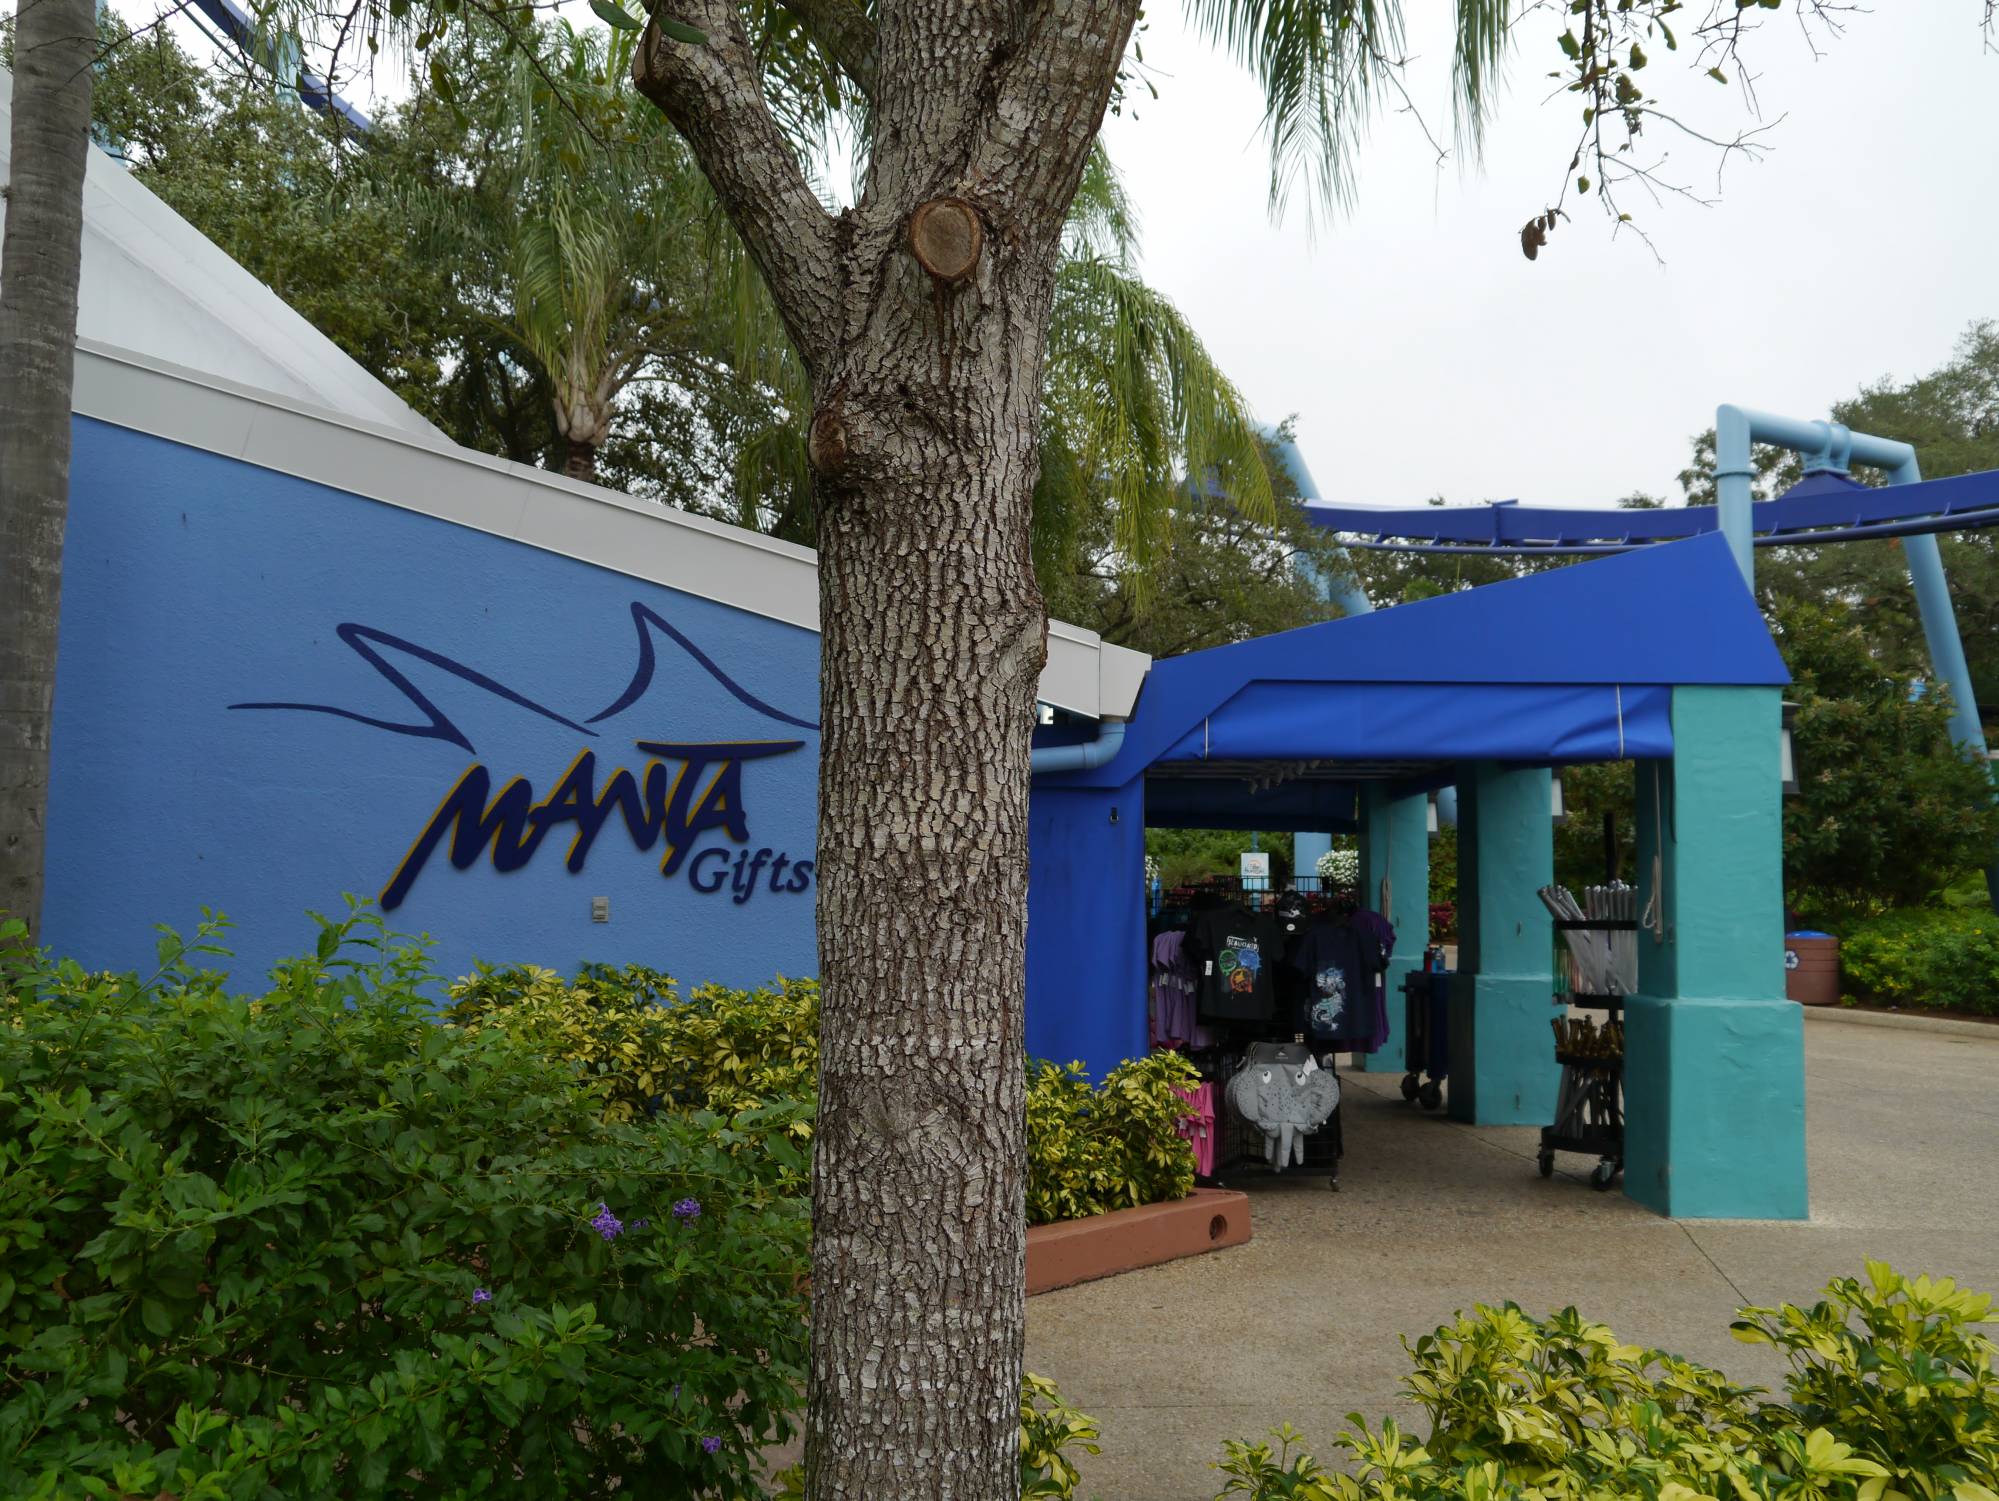 SeaWorld - Manta gifts